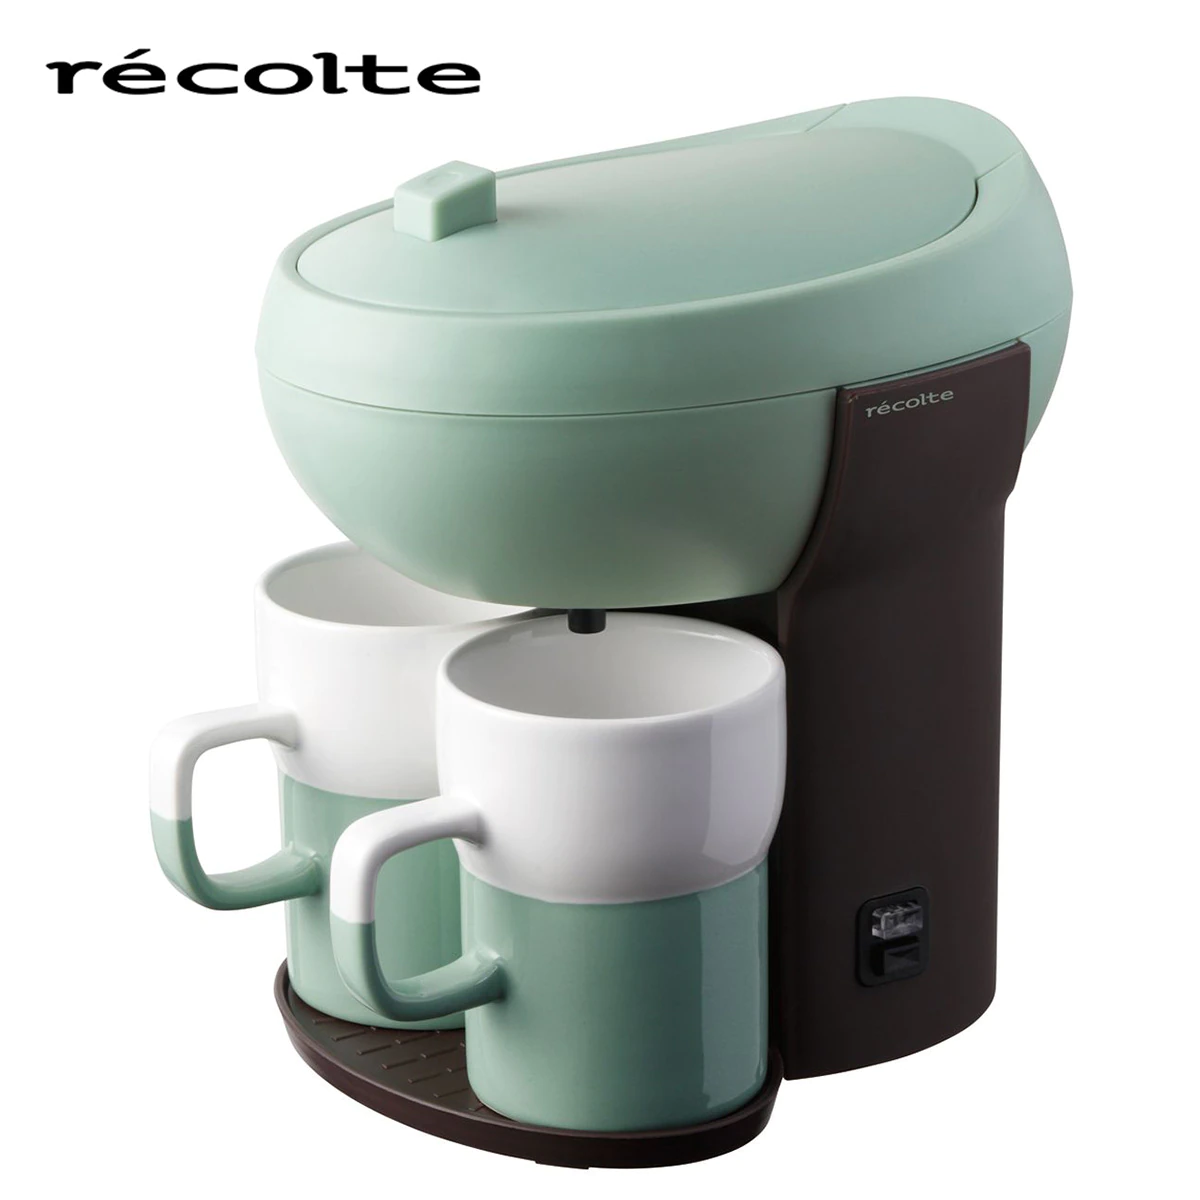 recolte(レコルト) カフェデュオ コーヒーメーカー パウス シェルグリーン RKD-4-G 送料無料 5,500円(税込)